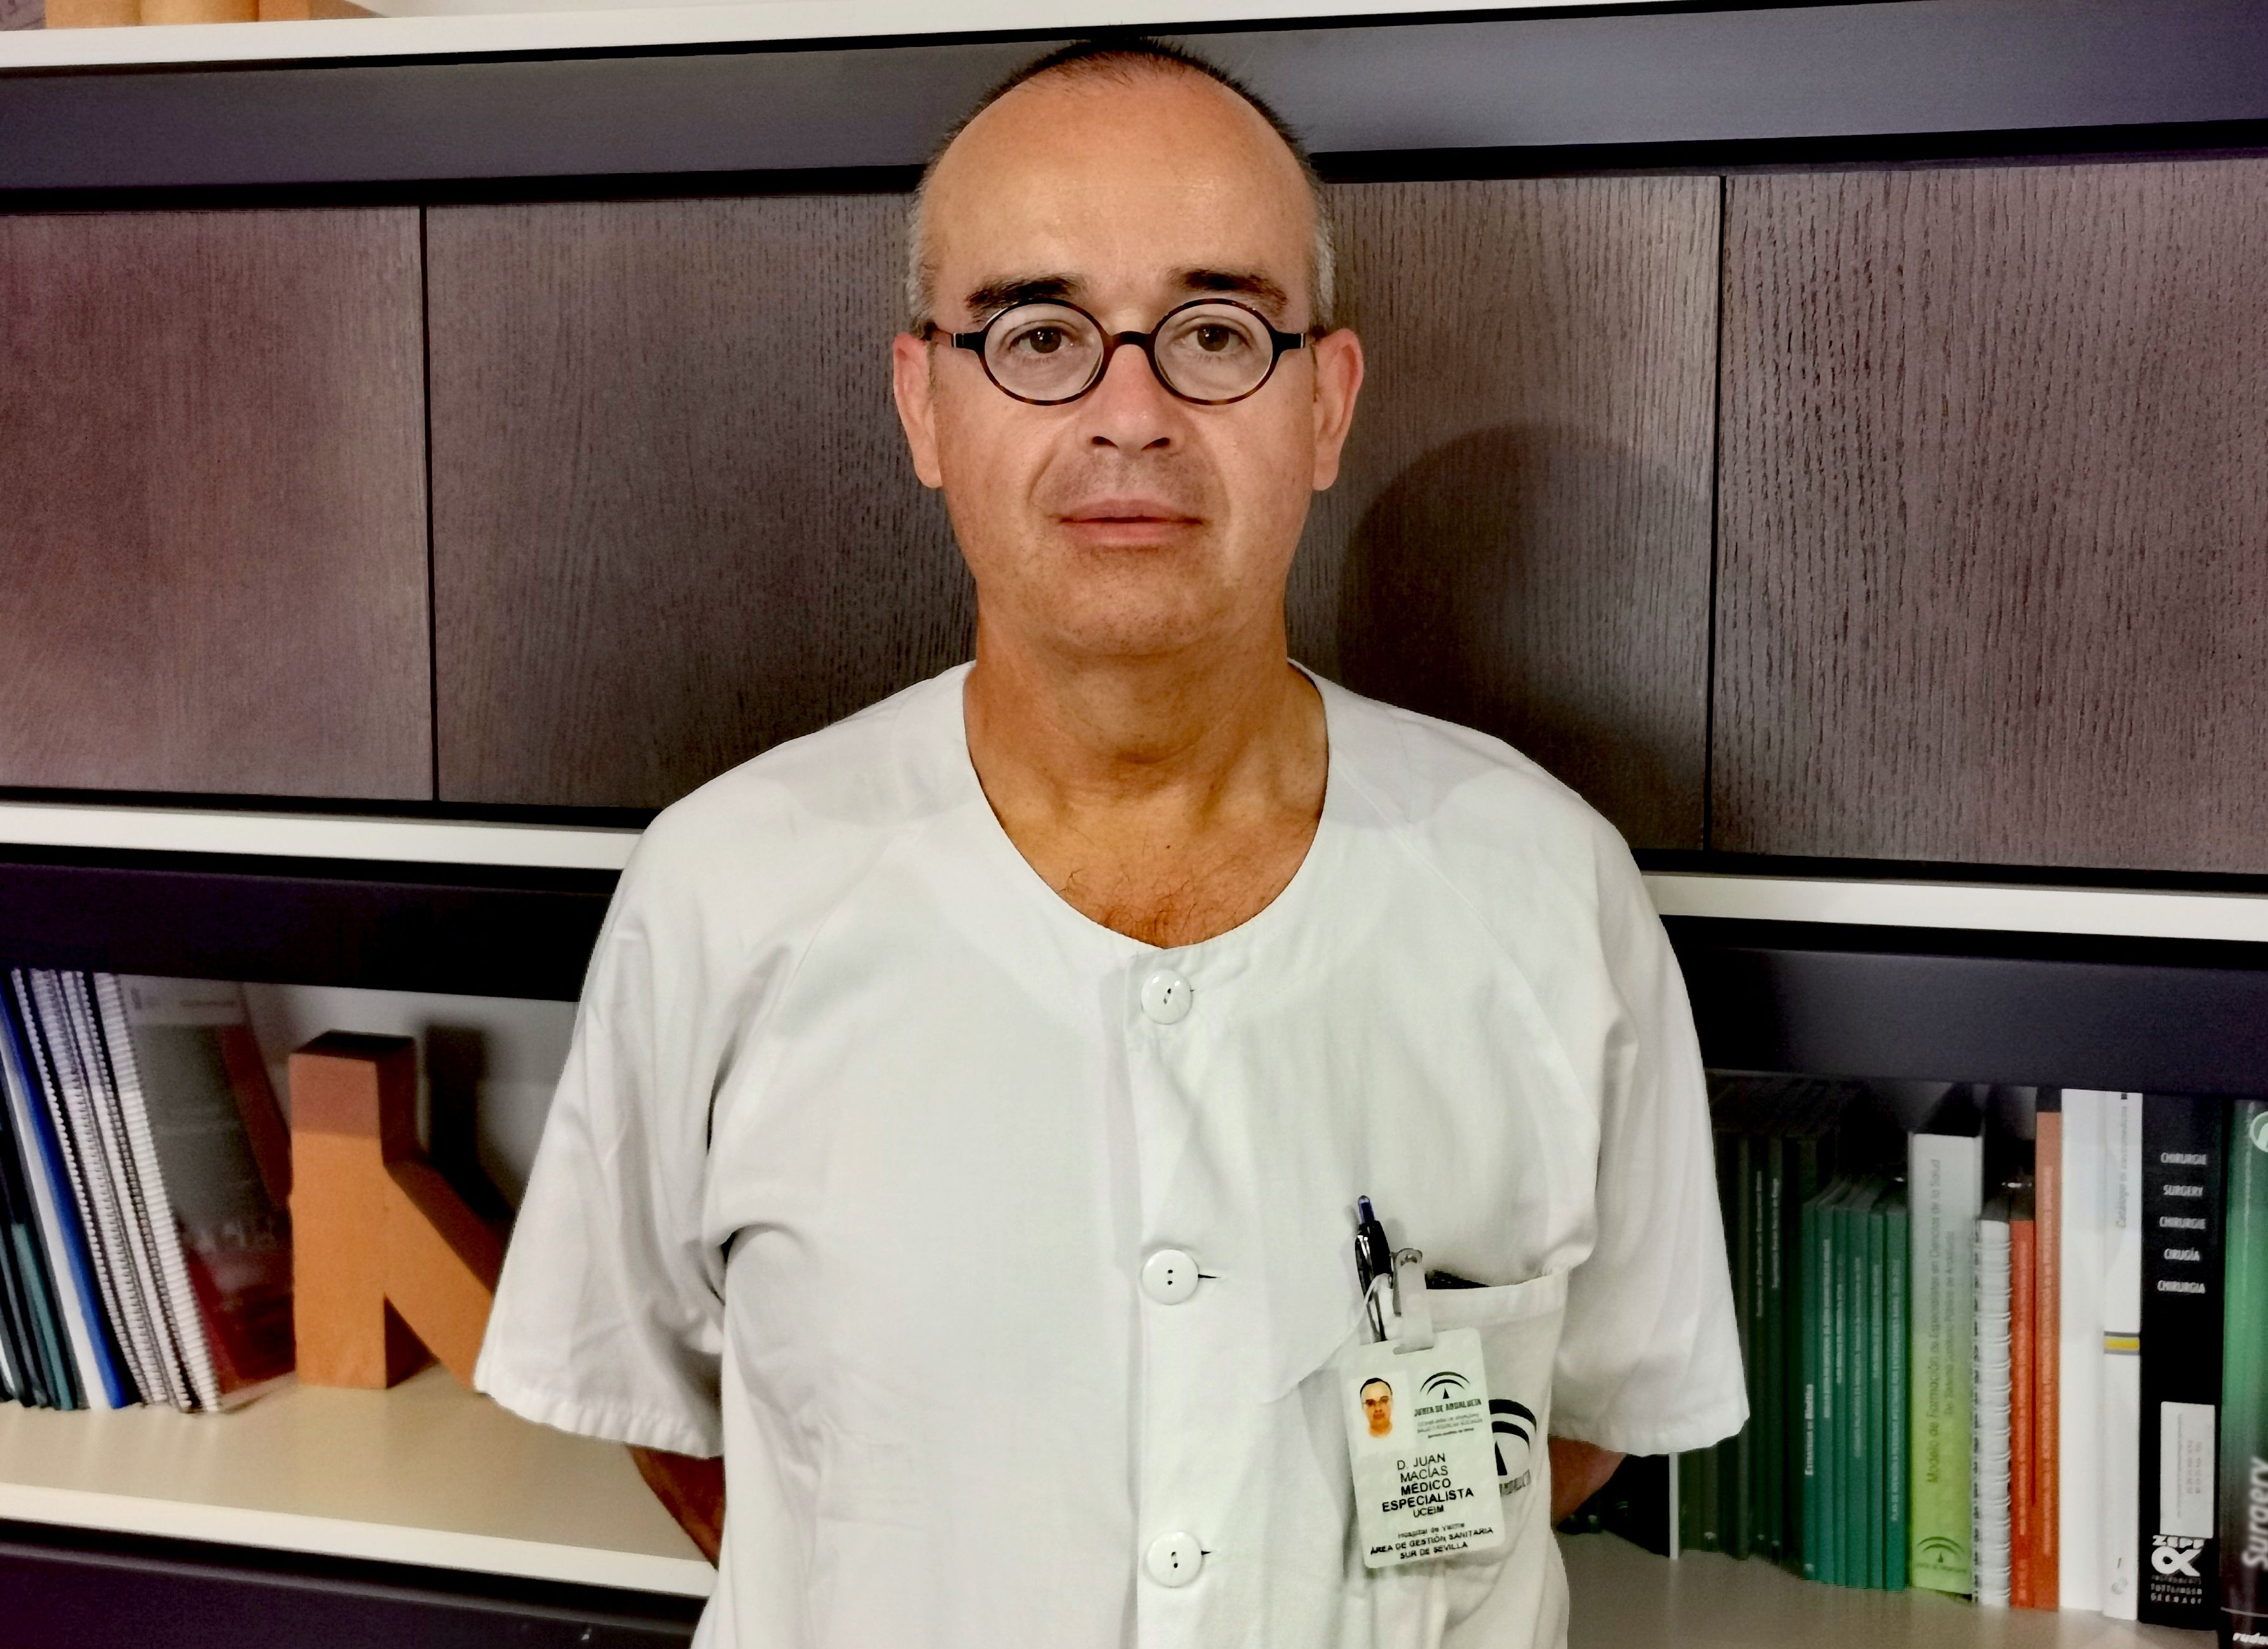 El infectólogo del Hospital de Valme Juan Macías Sánchez, nombrado presidente del Grupo de Estudio de Hepatitis Víricas (GEHEP)